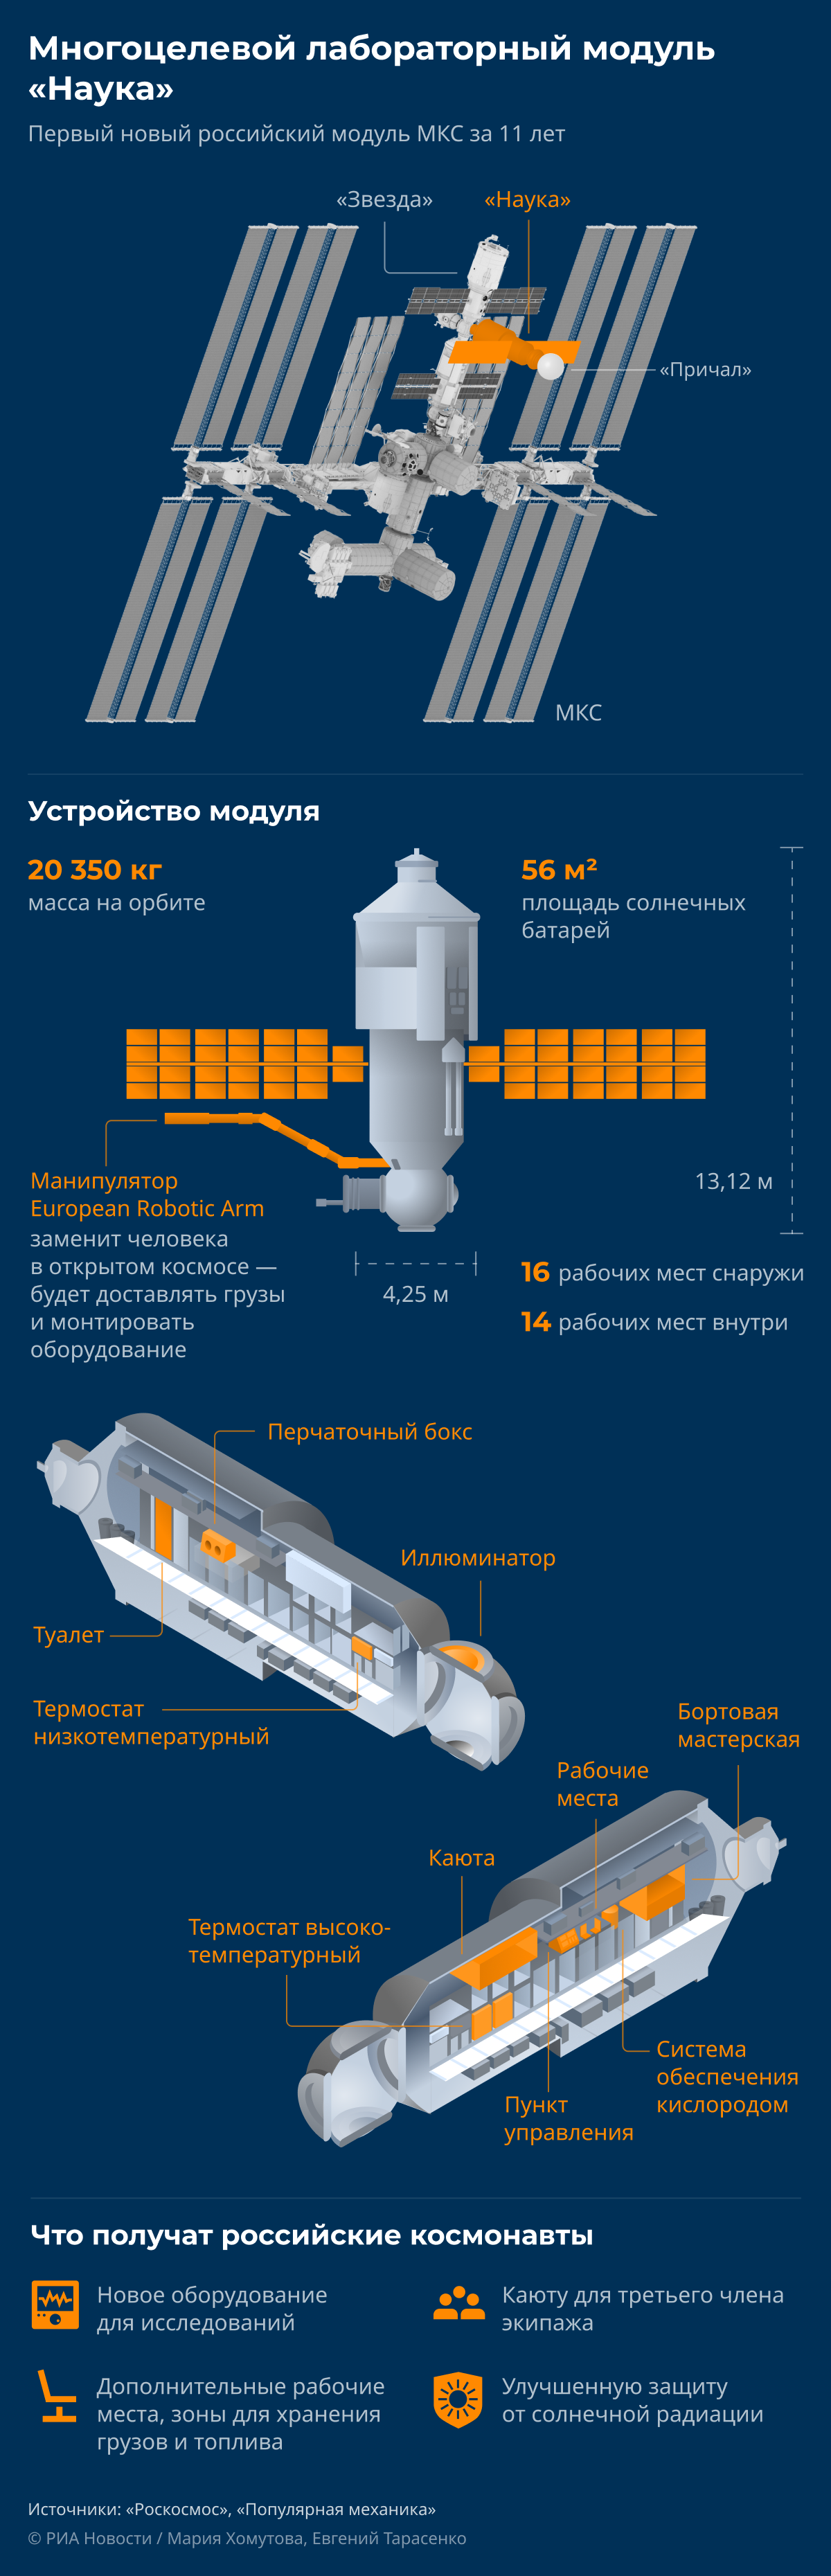 МЛМ Наука: как устроен новый модуль российской части МКС desk